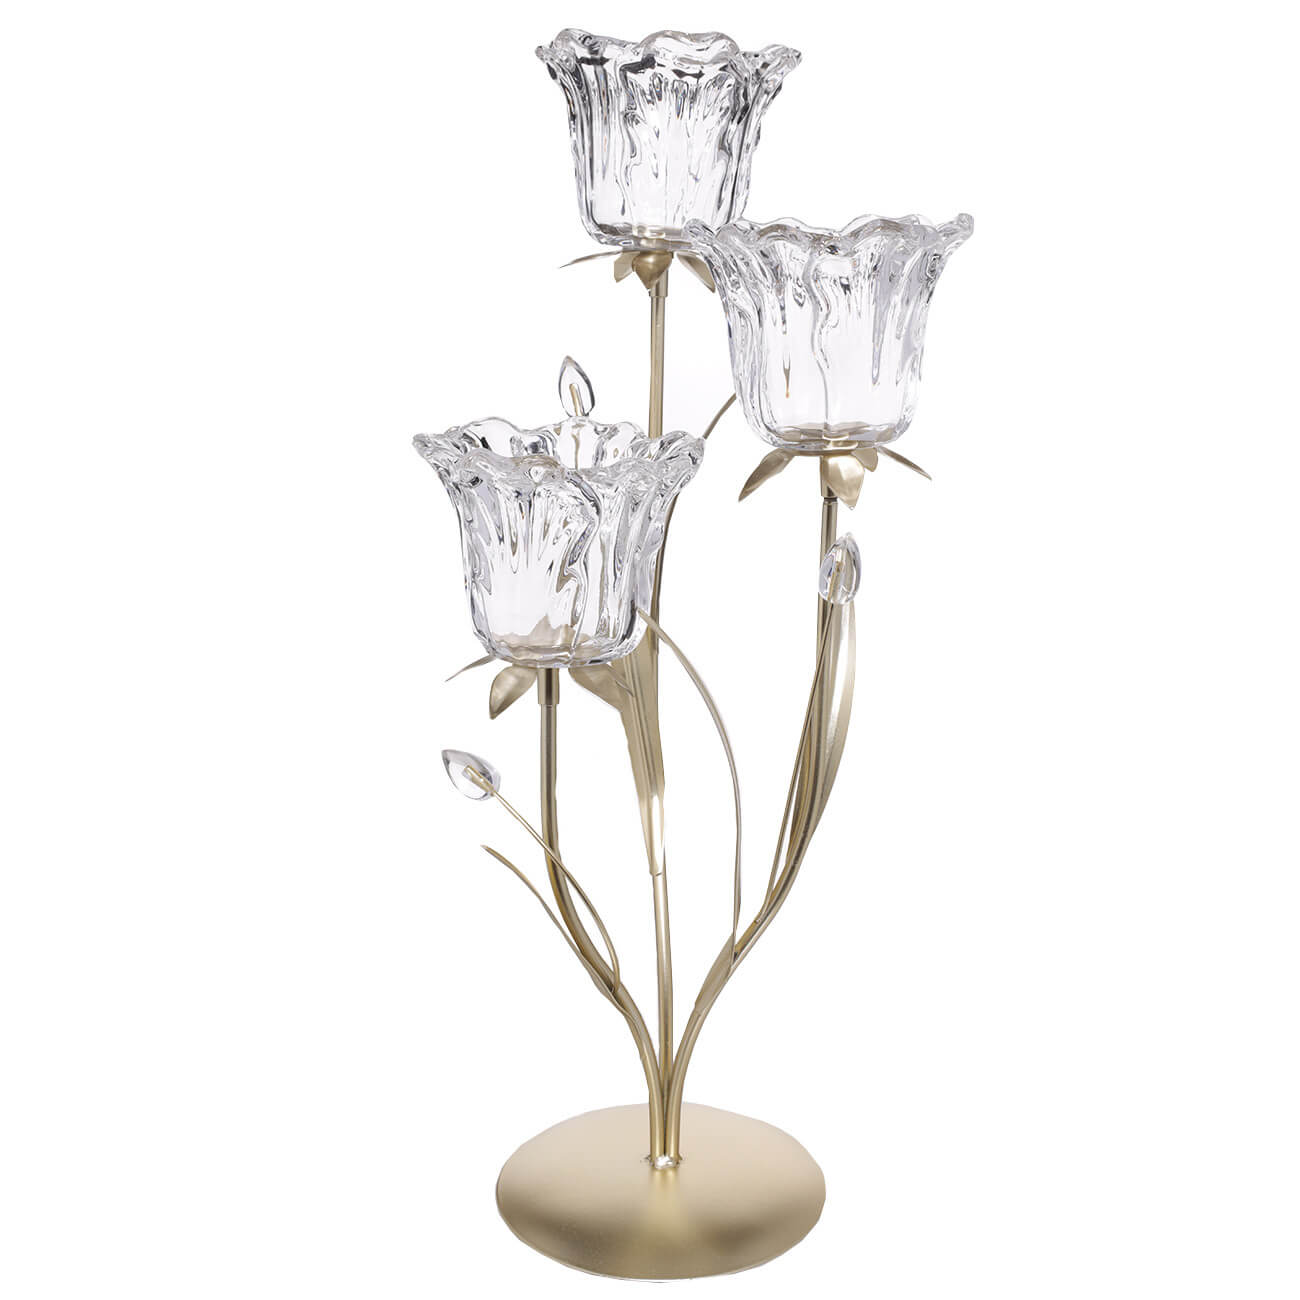 Подсвечник, 45 см, 3 чайные свечи, стекло/металл, золотистый, Цветы, Fantastic flowers подсвечник для 1 свечи баланс металл